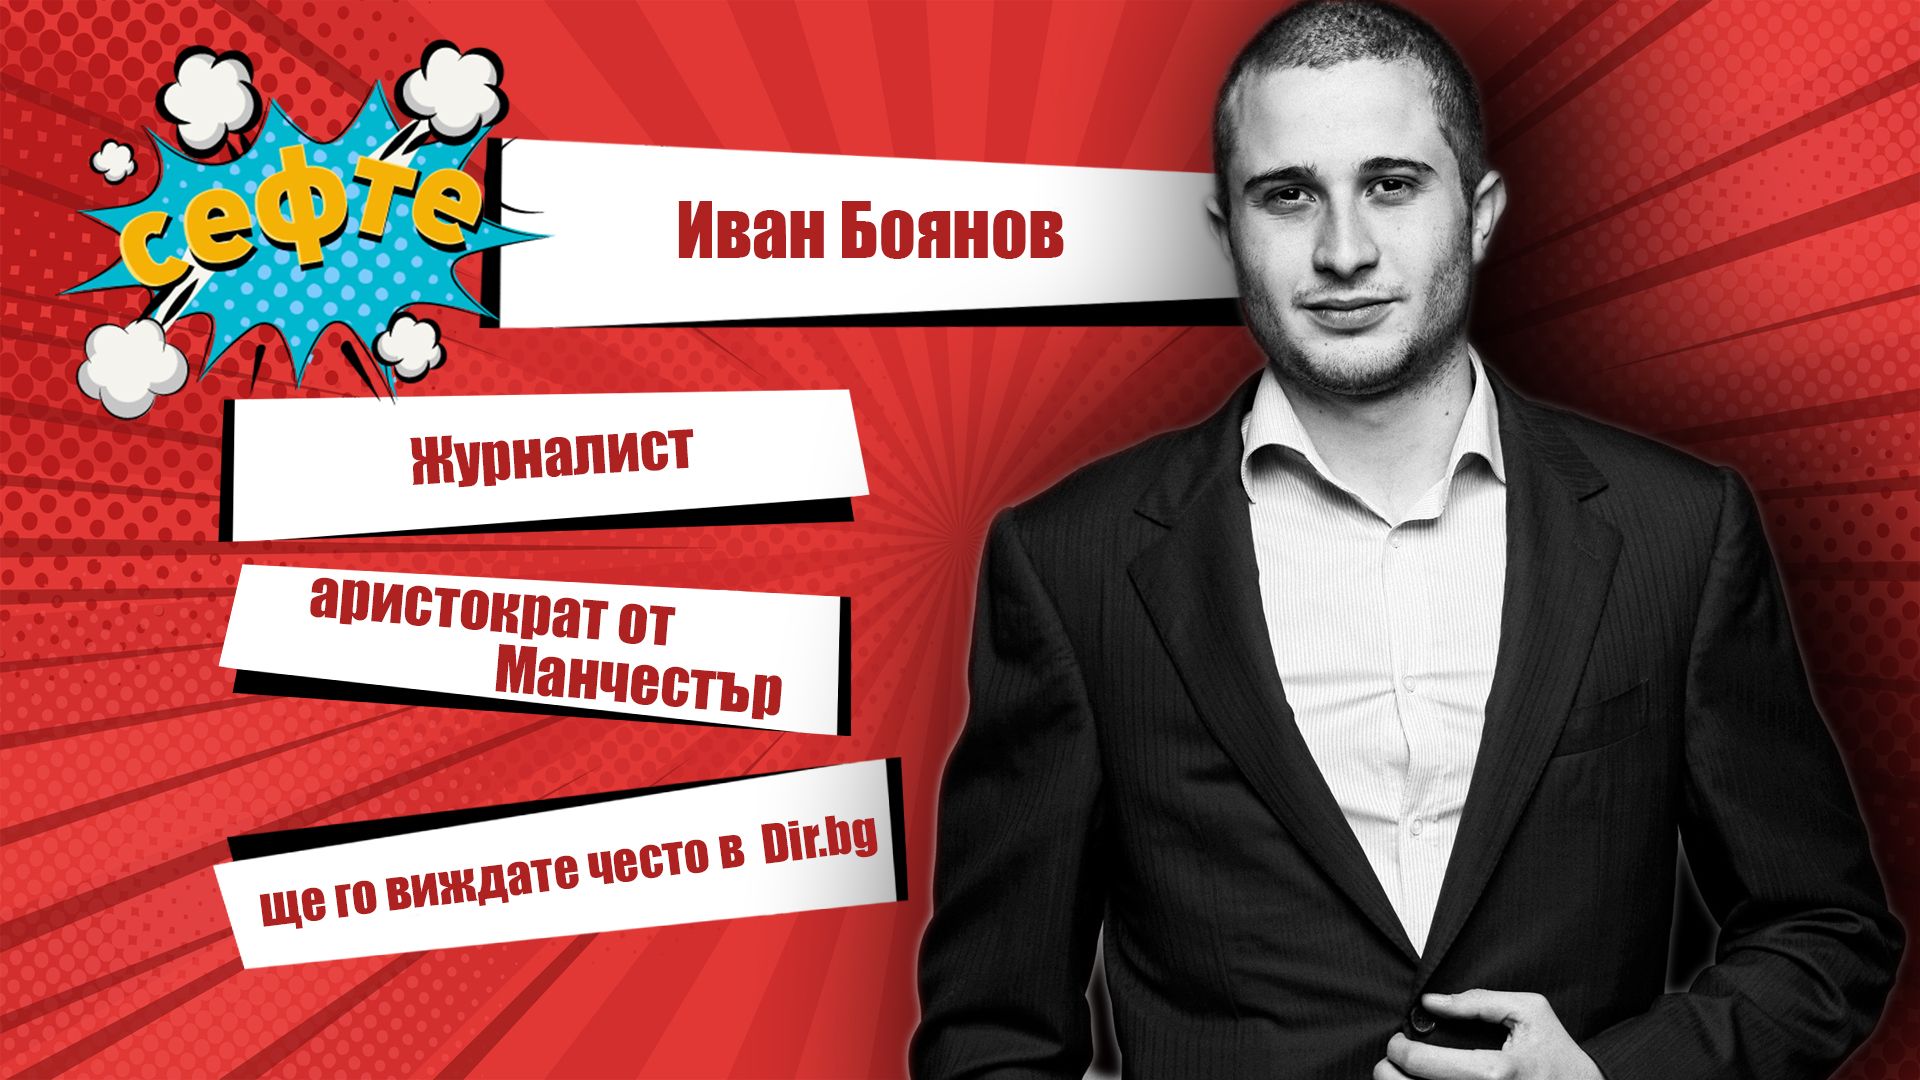 Журналистът Иван Боянов за #Сефте в Dir